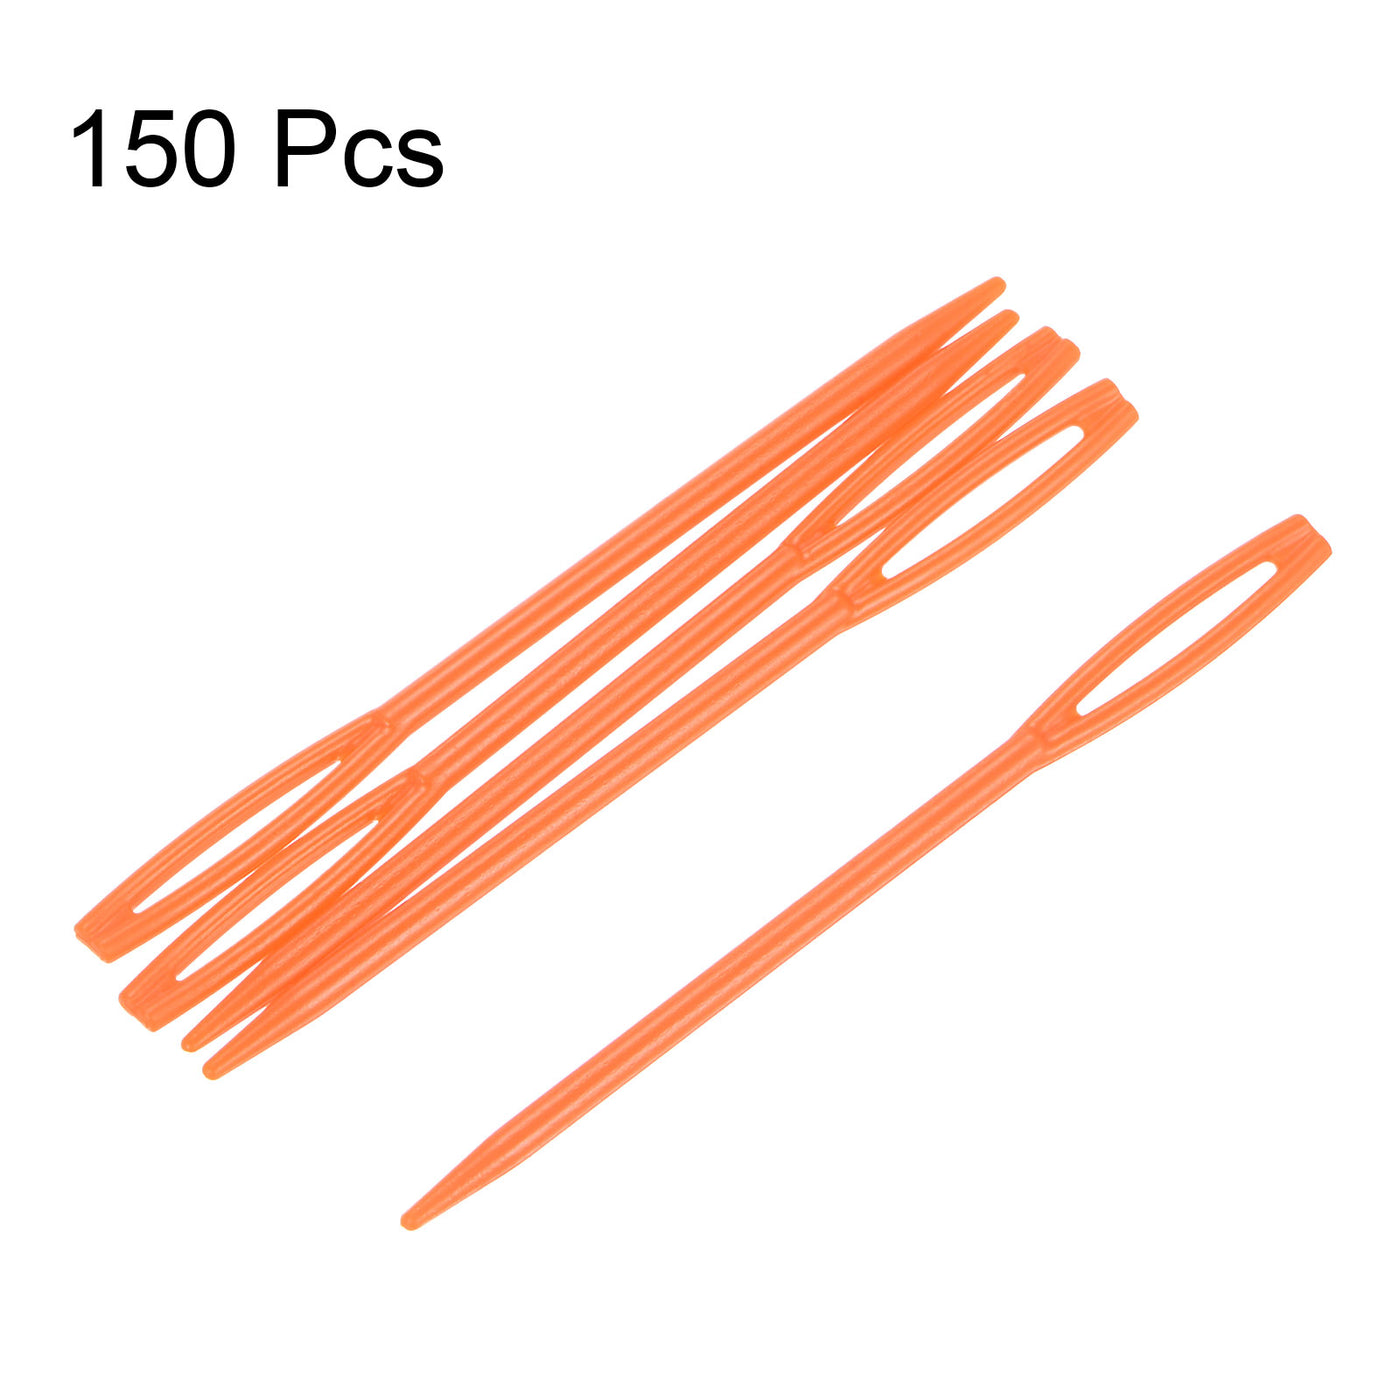 Harfington 150pcs Plastic Sewing Needles, 7cm Large Eye Blunt Learning Needles, Orange